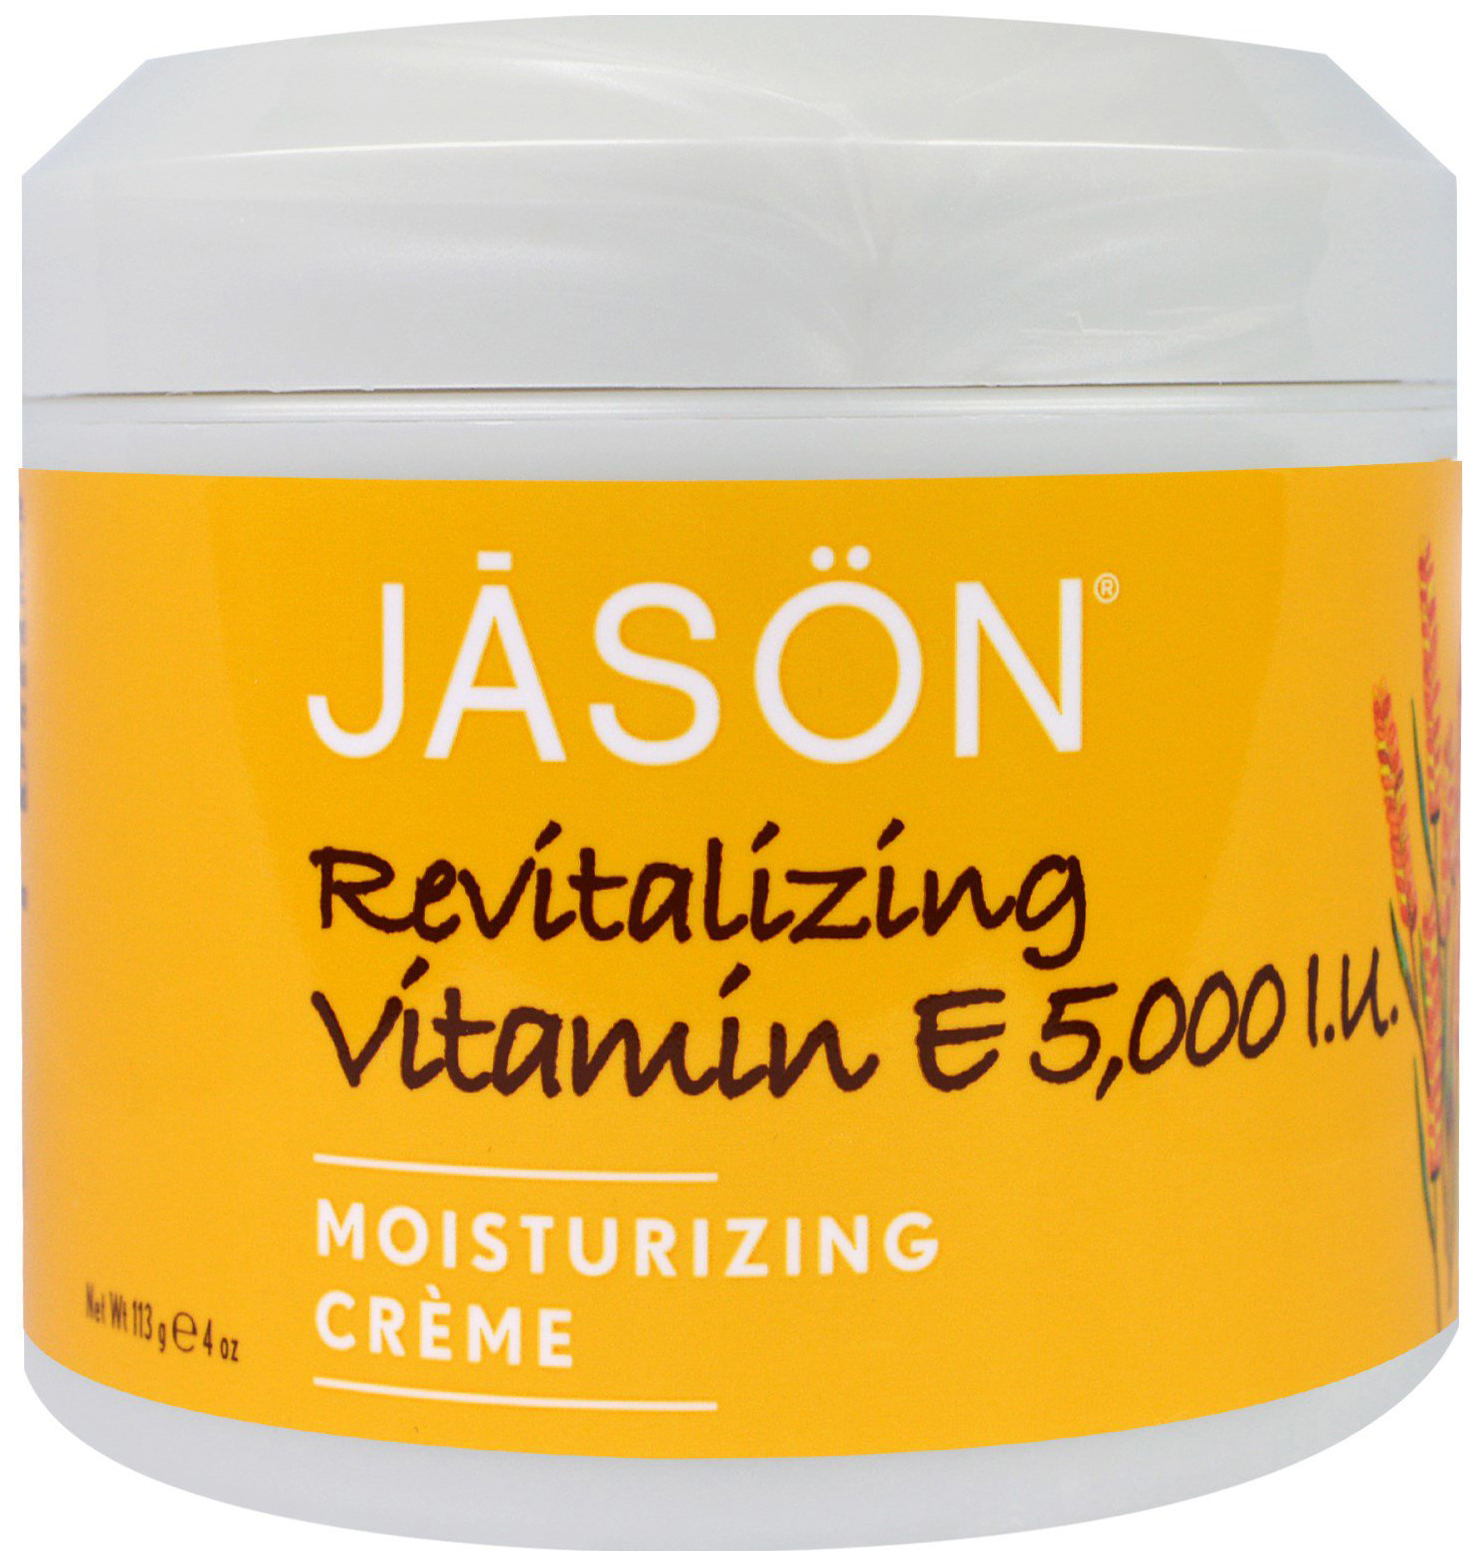 Крем для лица Jason Revitalizing Vitamin E Creme 5,000 IU dr hauschka крем регенерирующий для шеи и зоны декольте regeneration hals und dekolletе́creme 40 мл